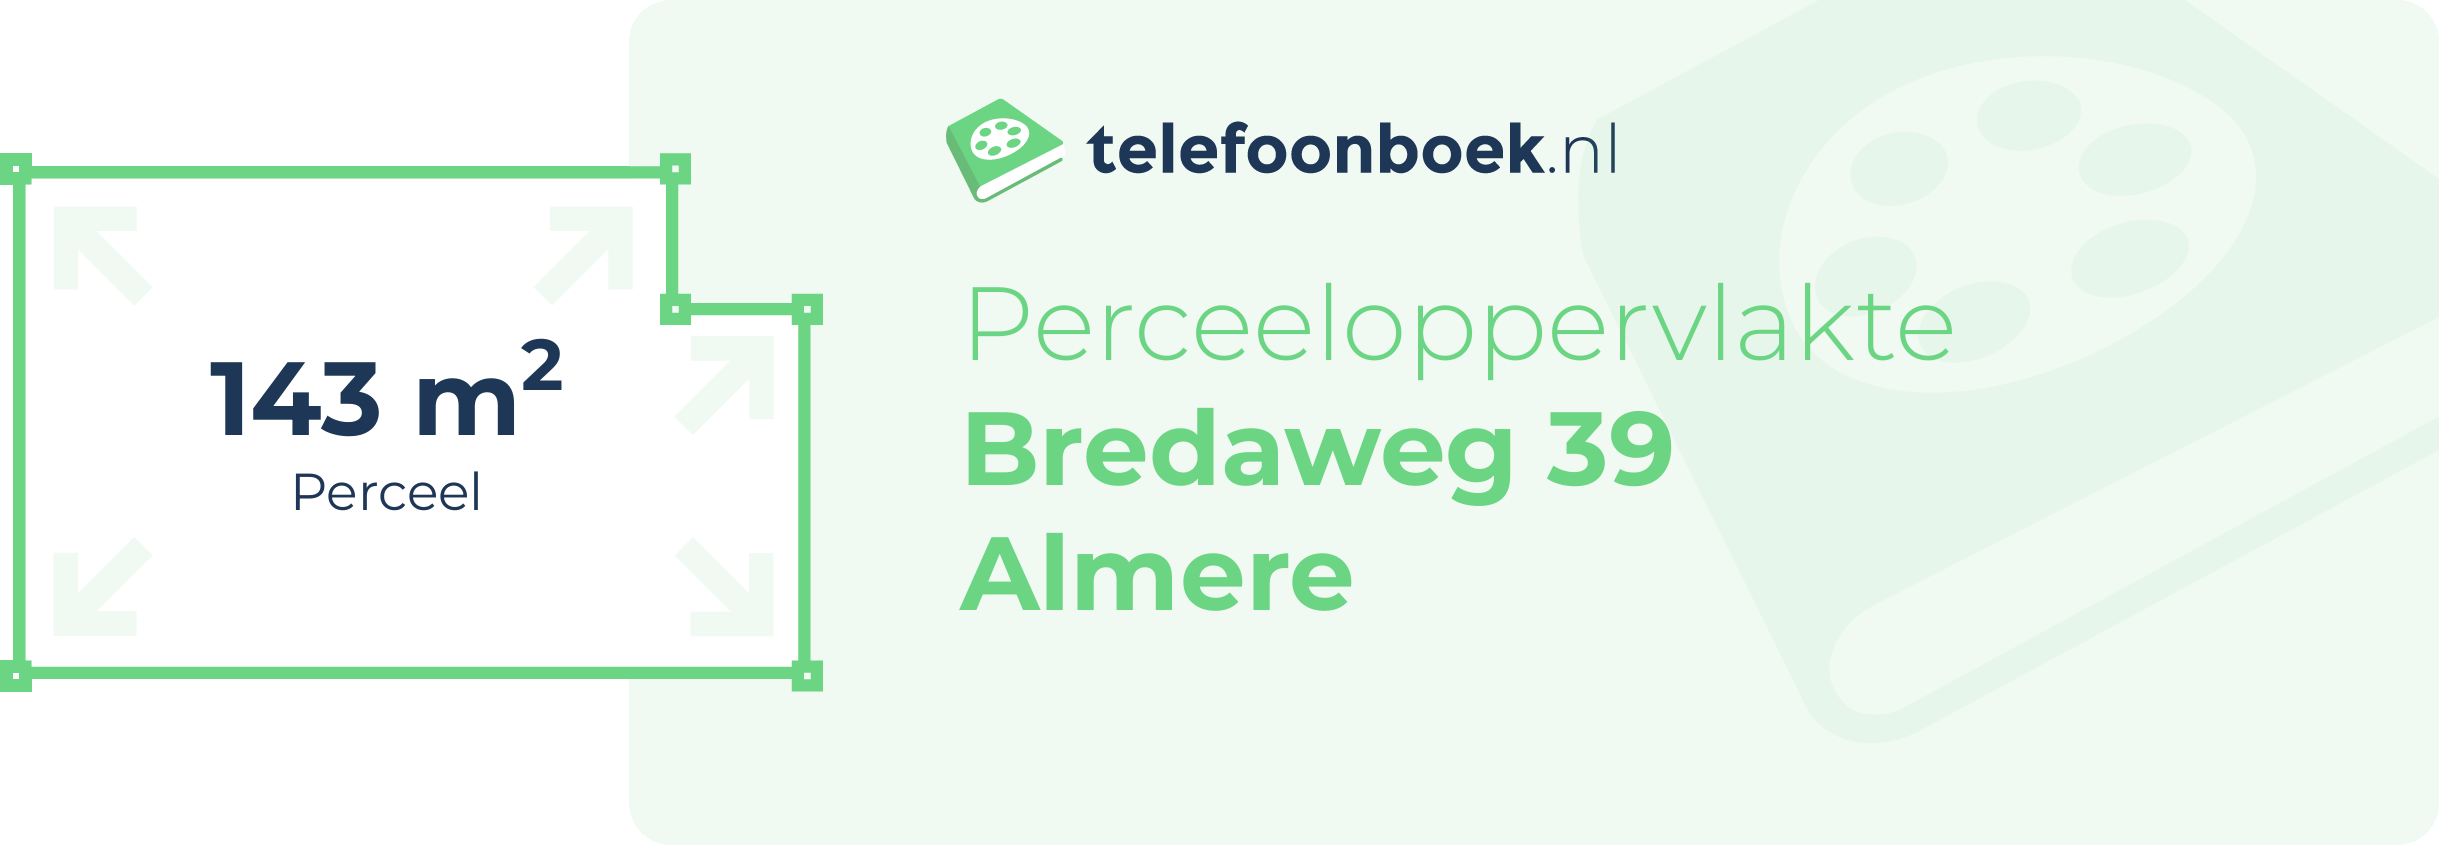 Perceeloppervlakte Bredaweg 39 Almere